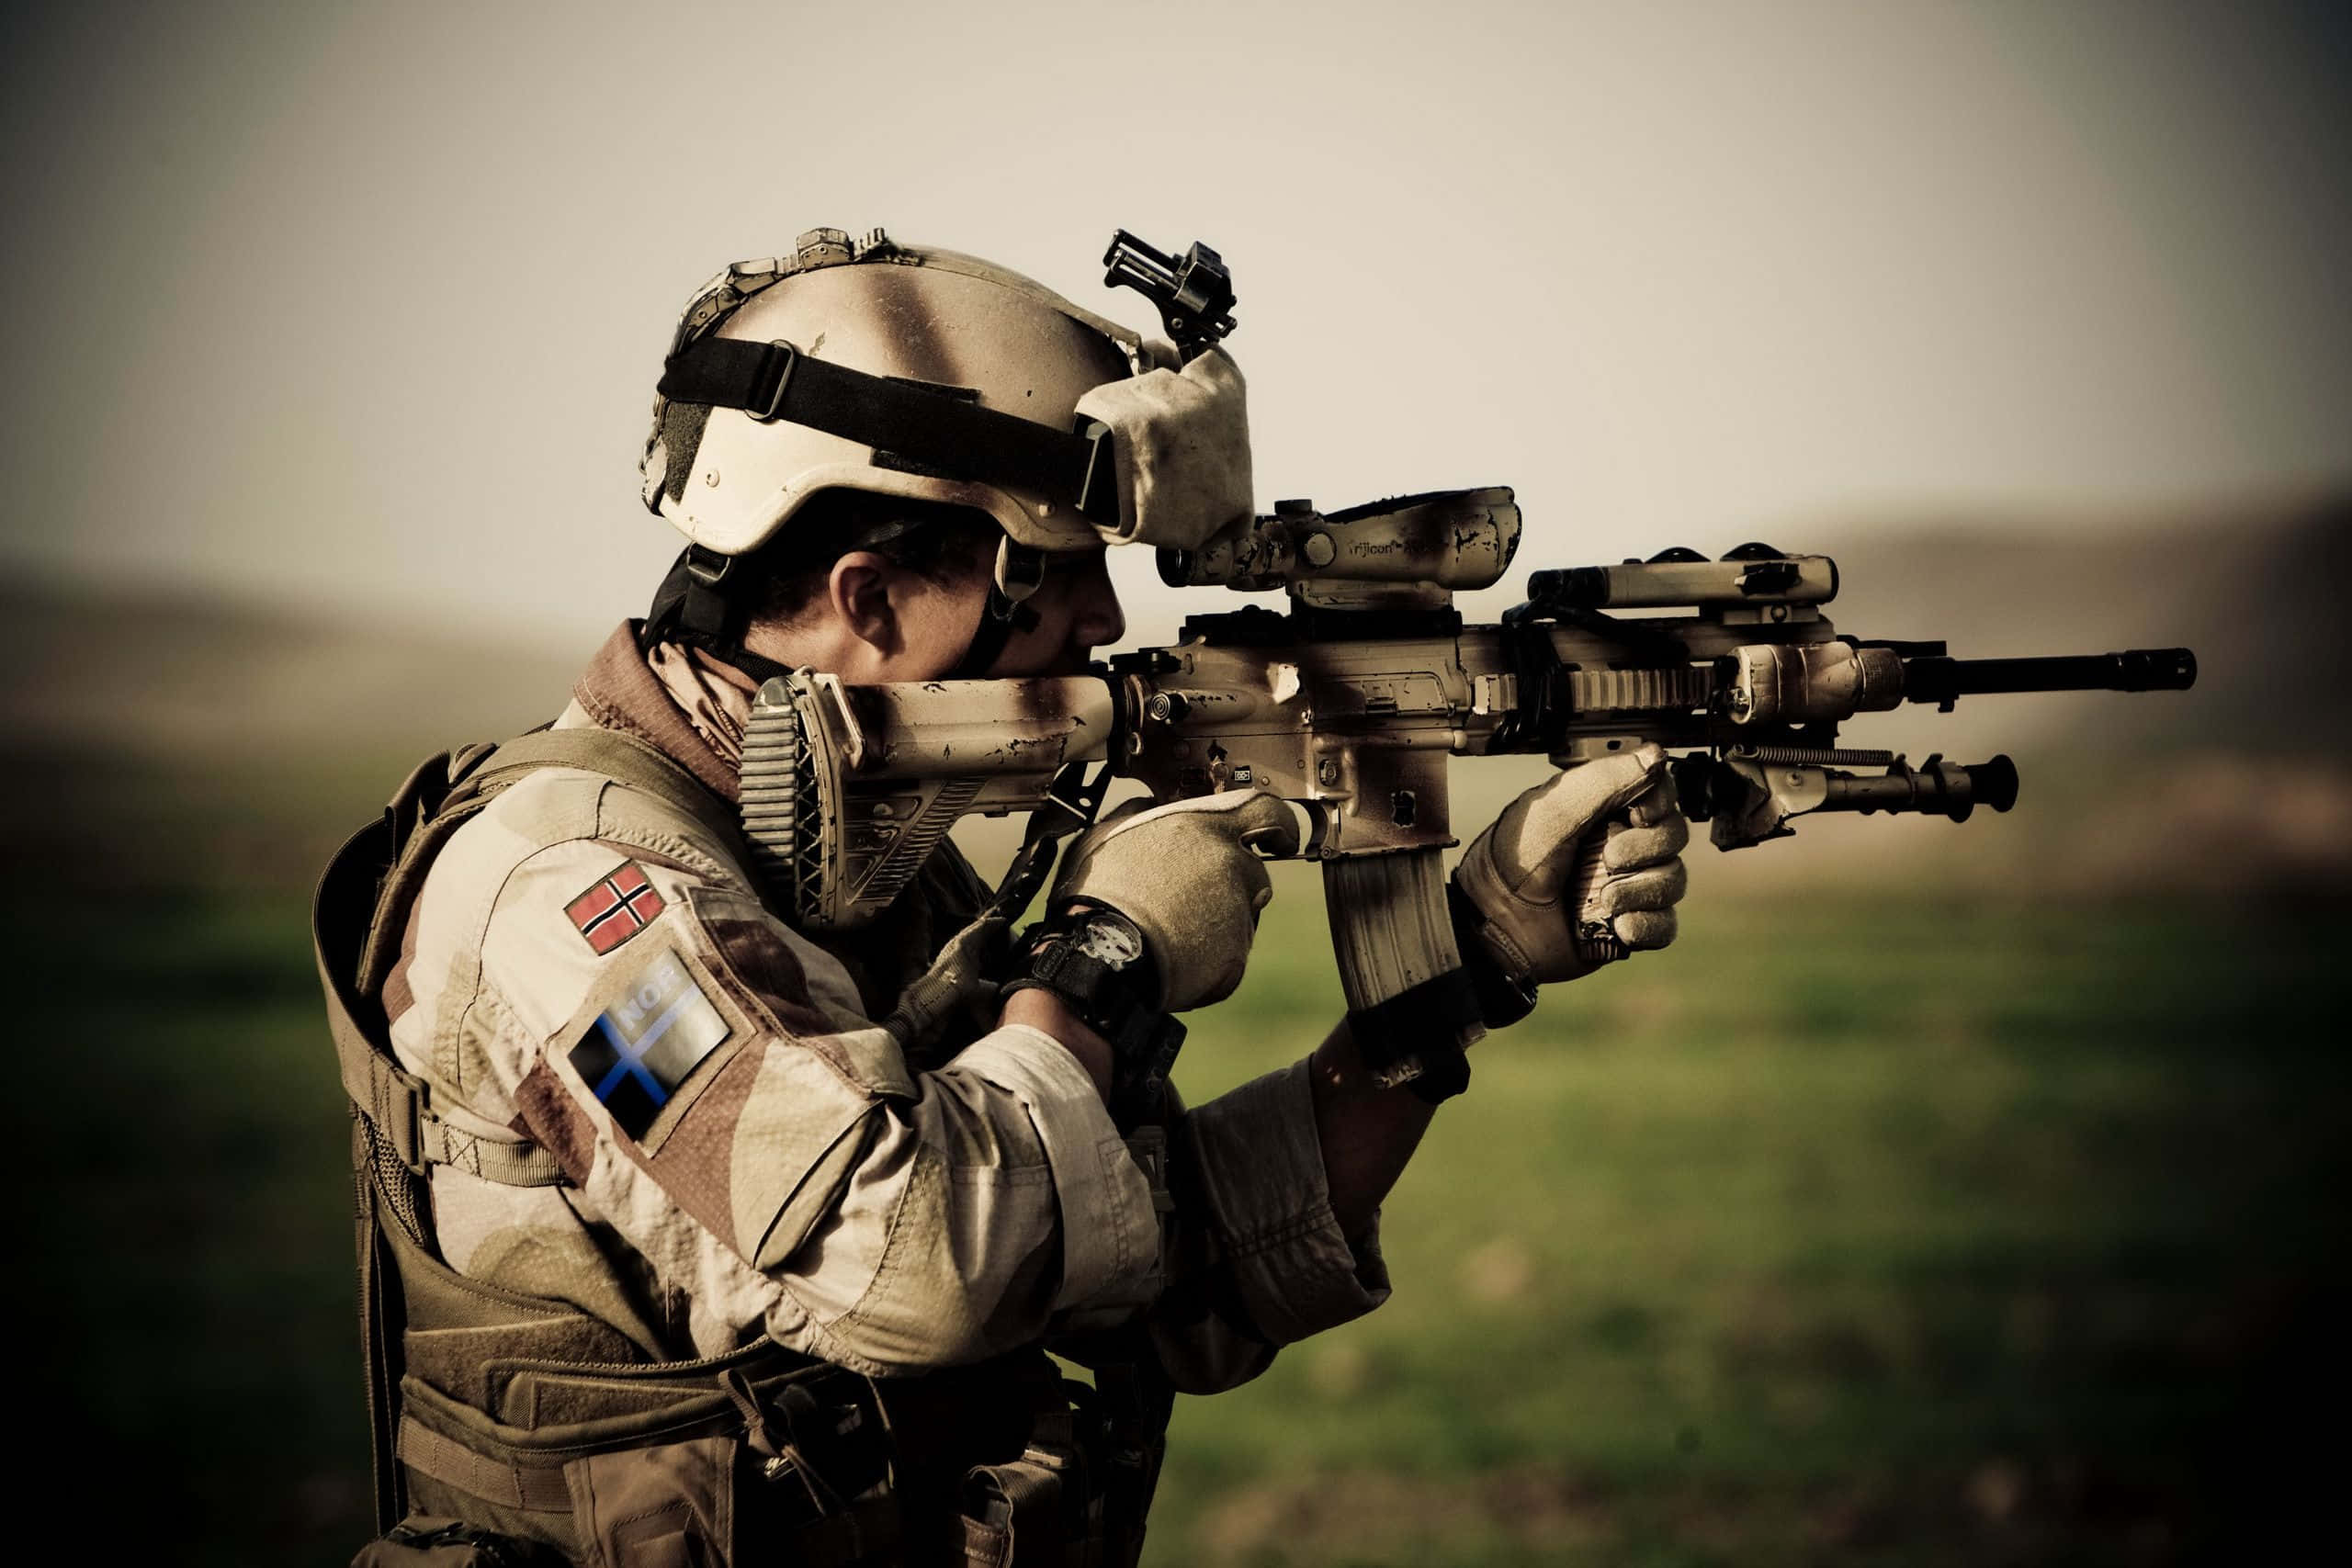 Valienteshombres Y Mujeres Del Ejército De Los Estados Unidos Defendiendo Nuestro País.